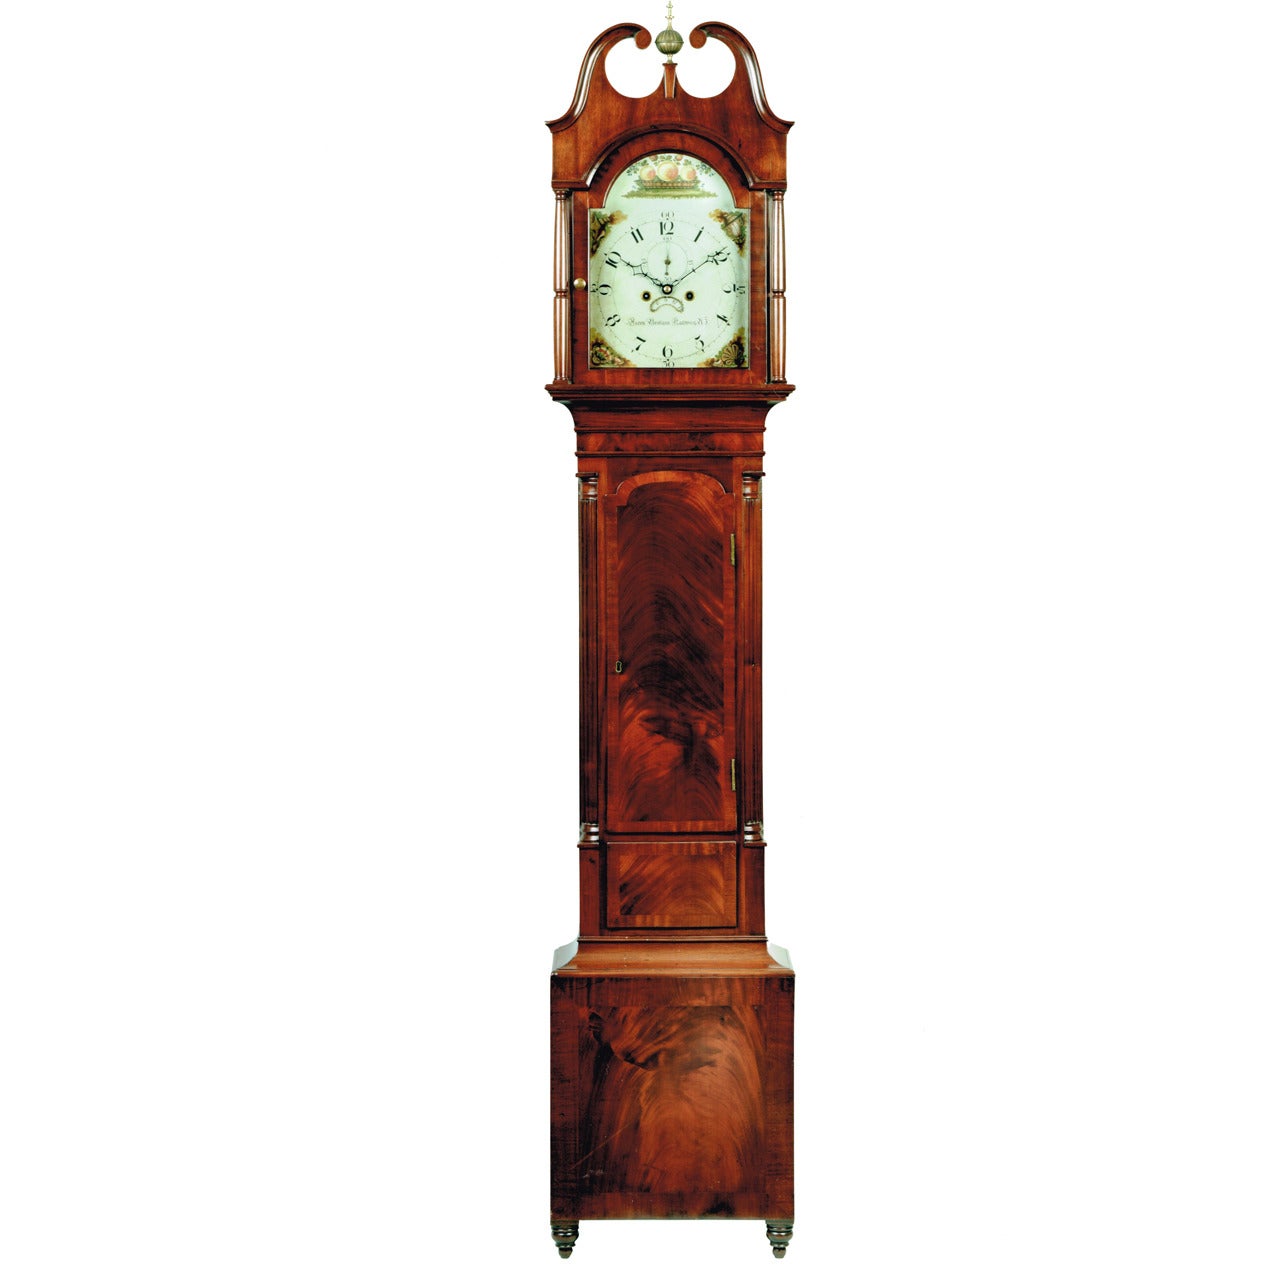 A Mahogany Longcase Clock by Aaron Brokaw, New Jersey